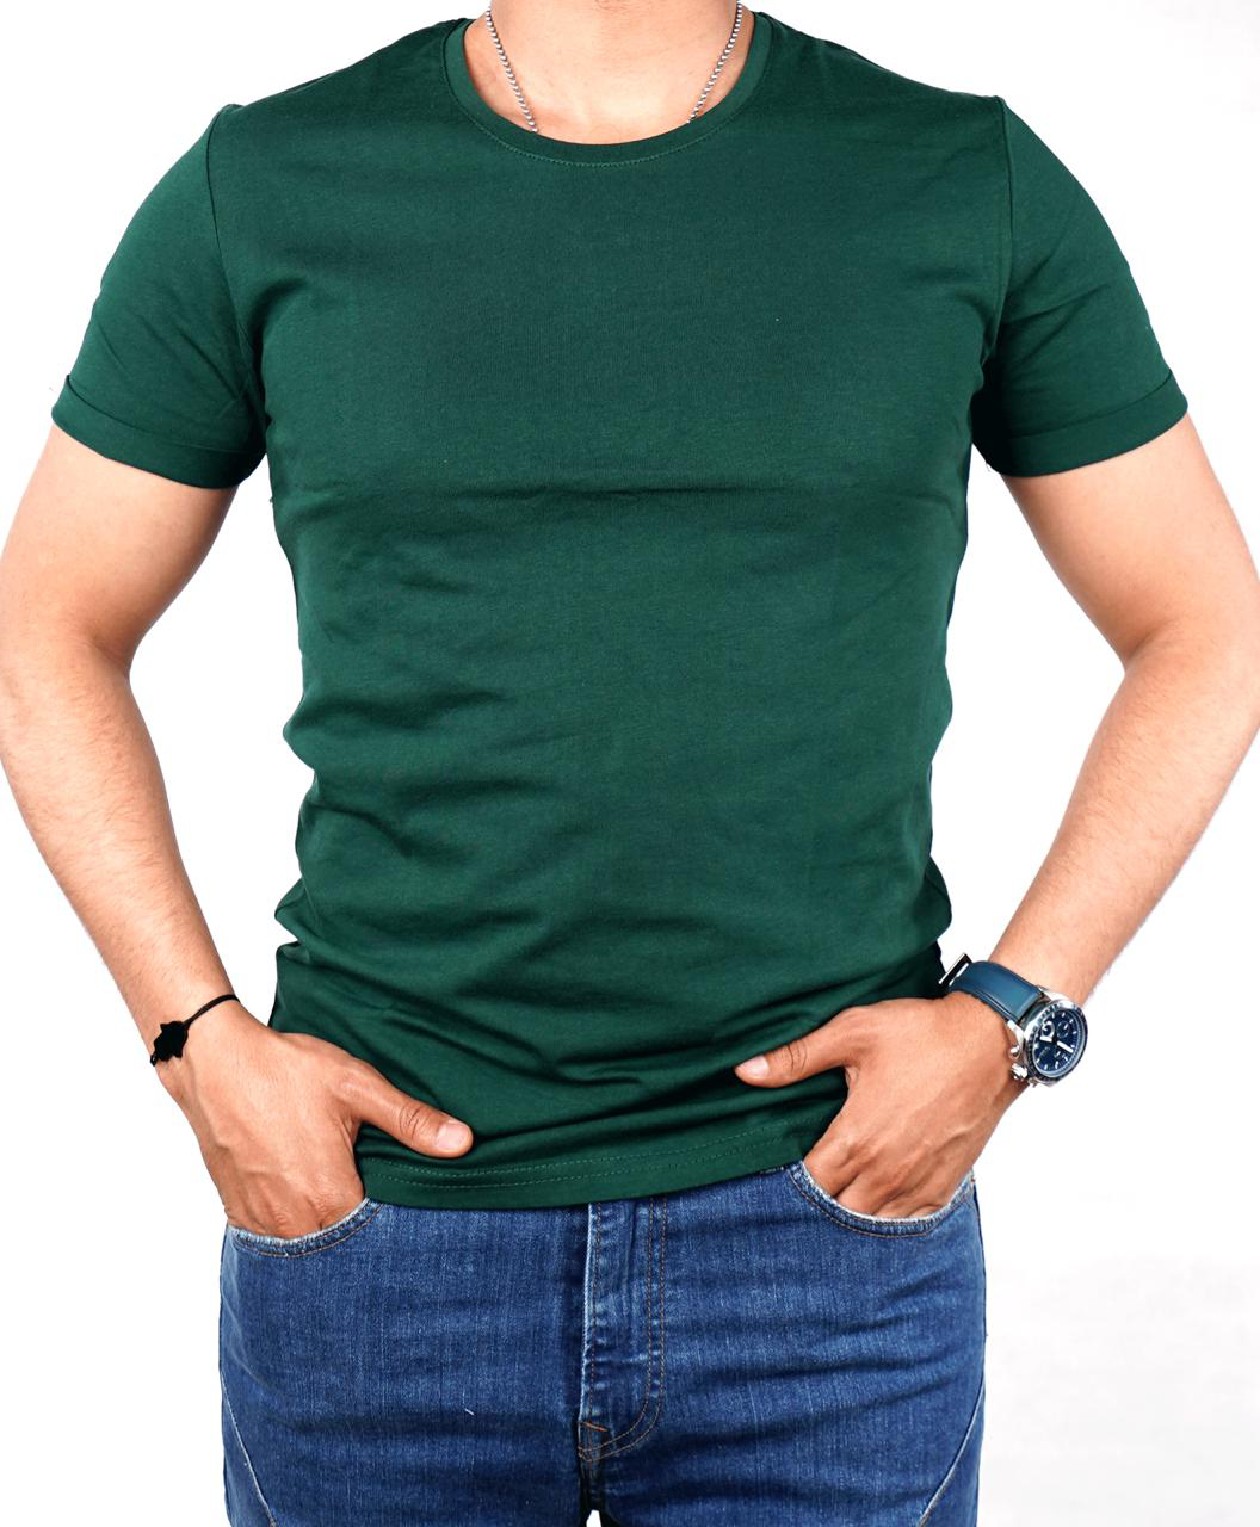 T-shirt TPM Türk pour homme - Vert